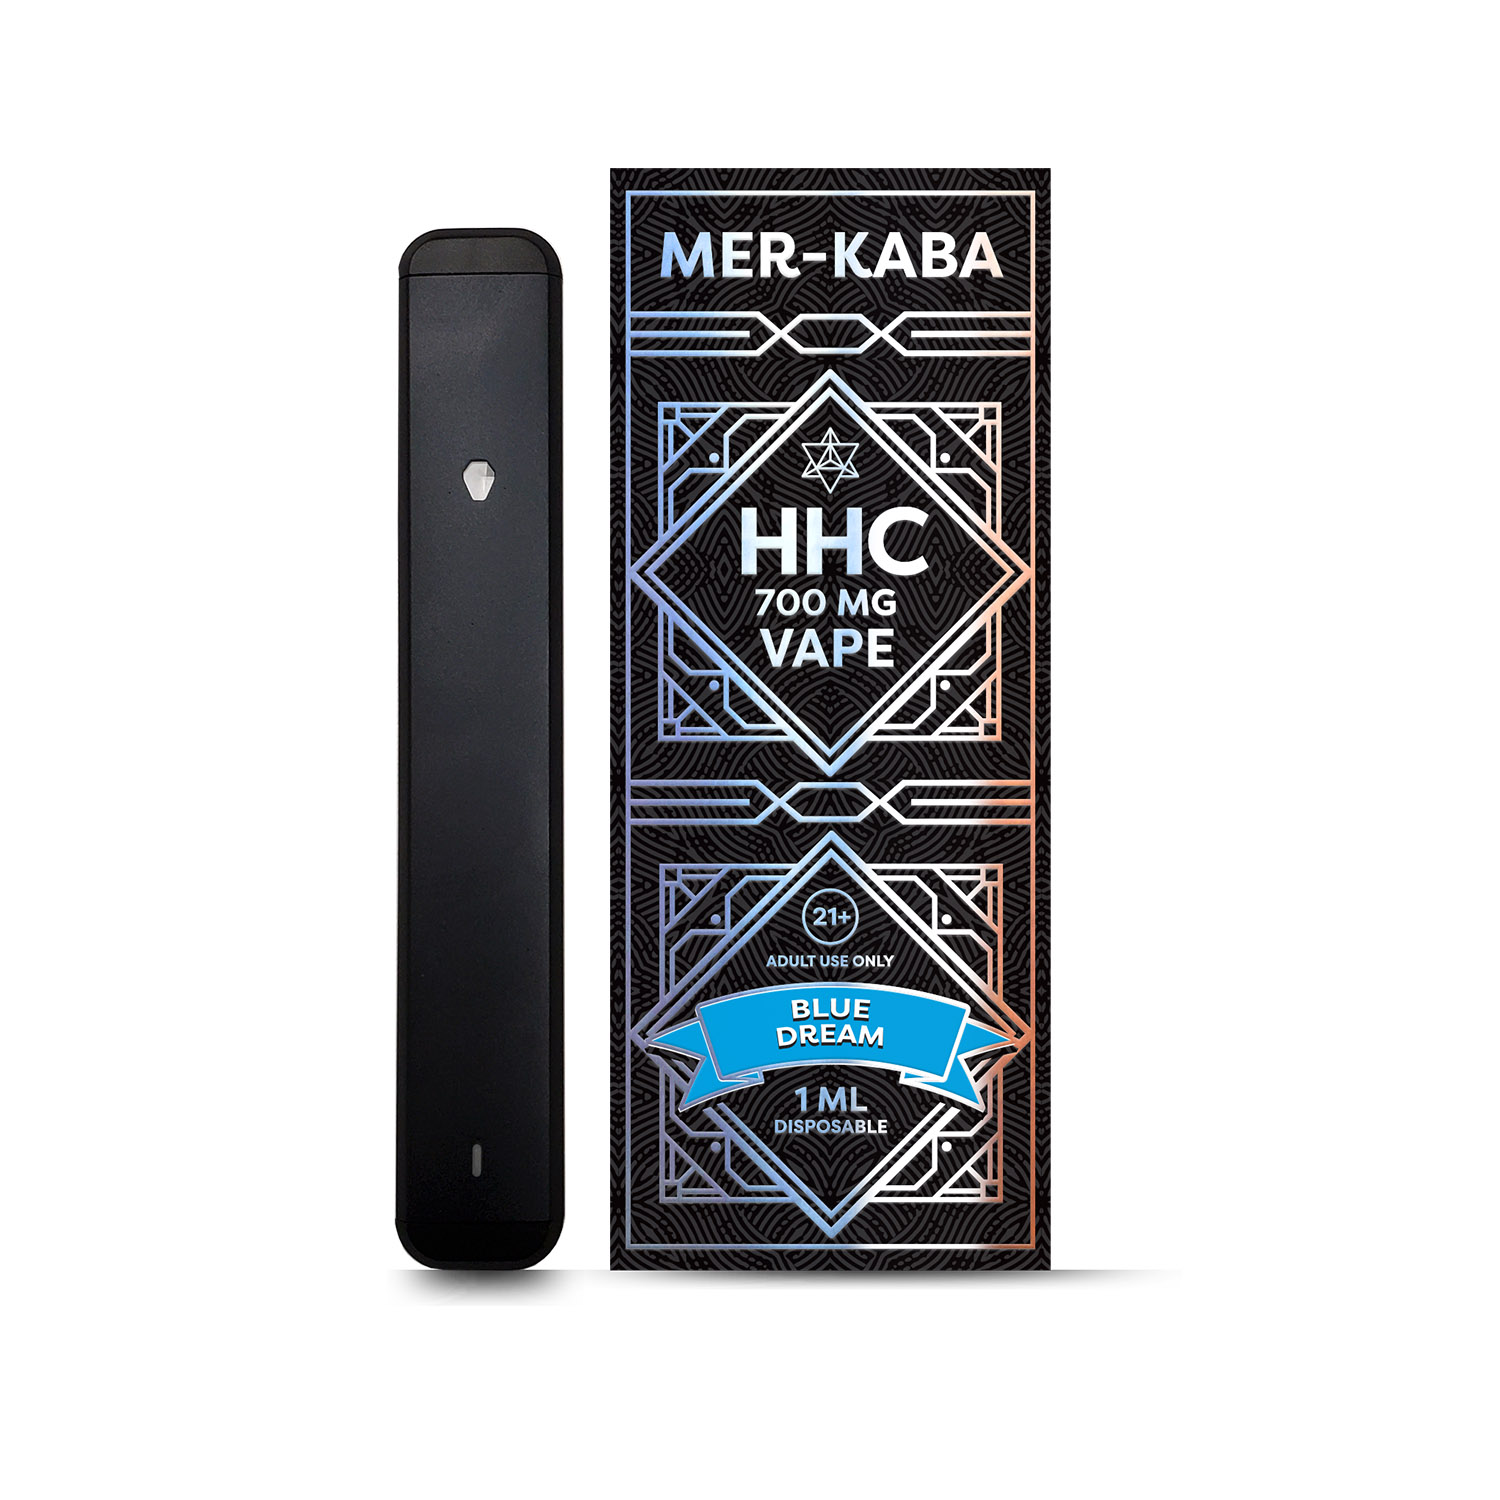 Mer-Kaba-700mg-HHC-Vape-Blue-Dream